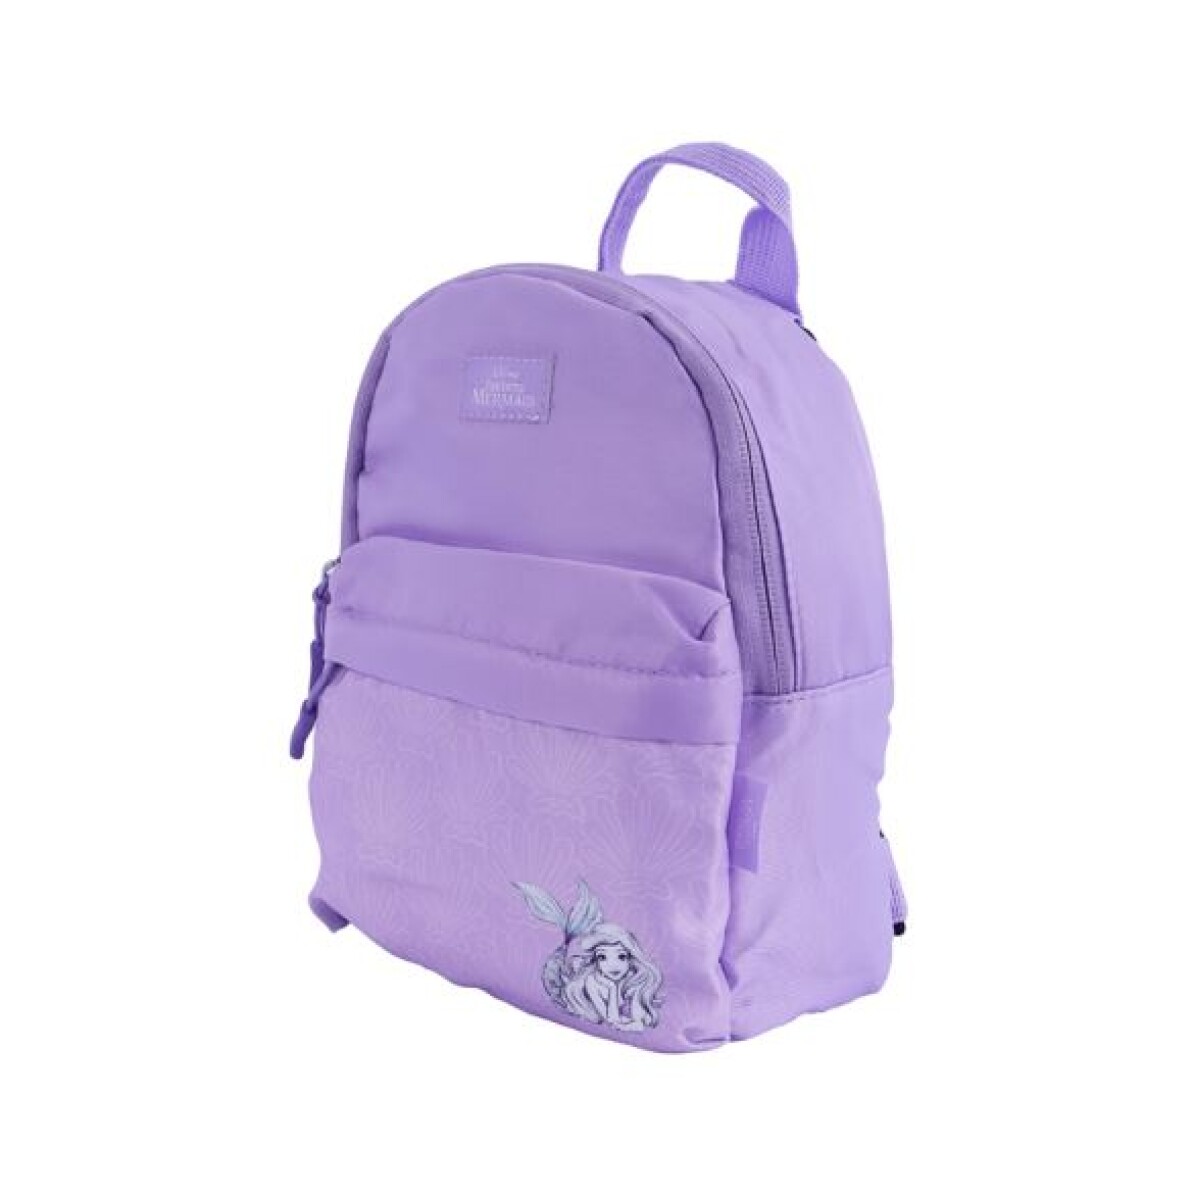 Mini mochila La Sirenita - violeta 